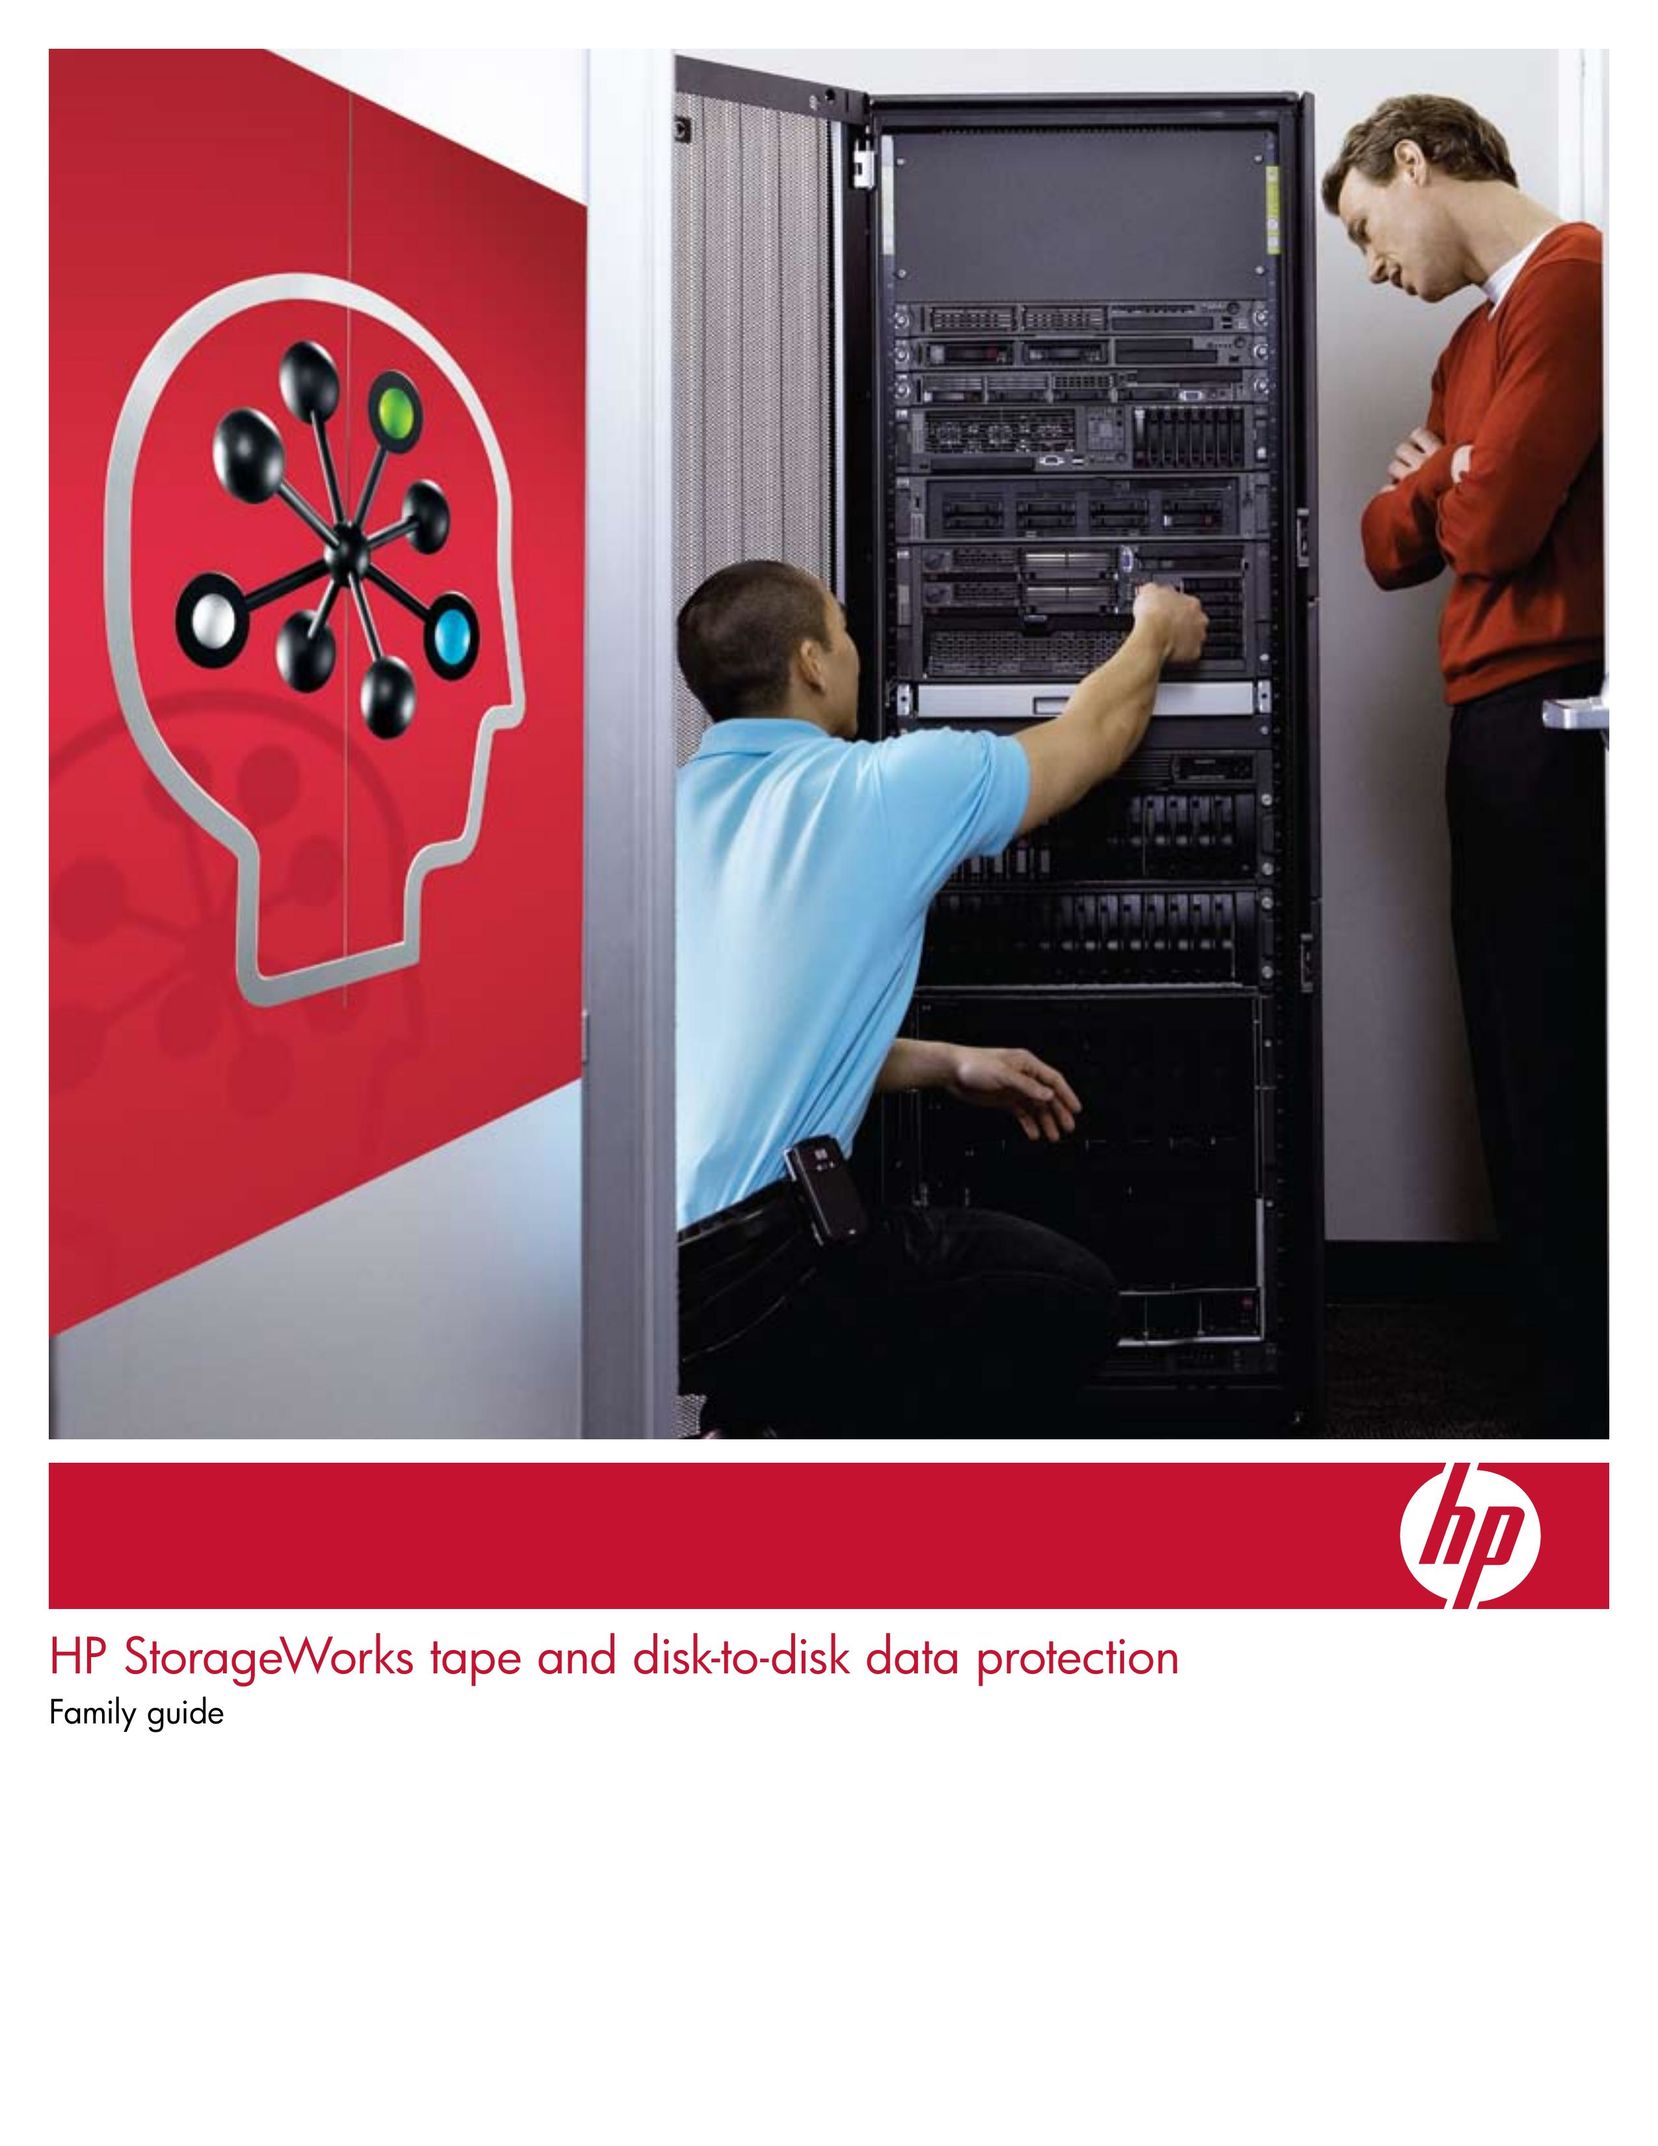 HP (Hewlett-Packard) D2D130 Computer Drive User Manual